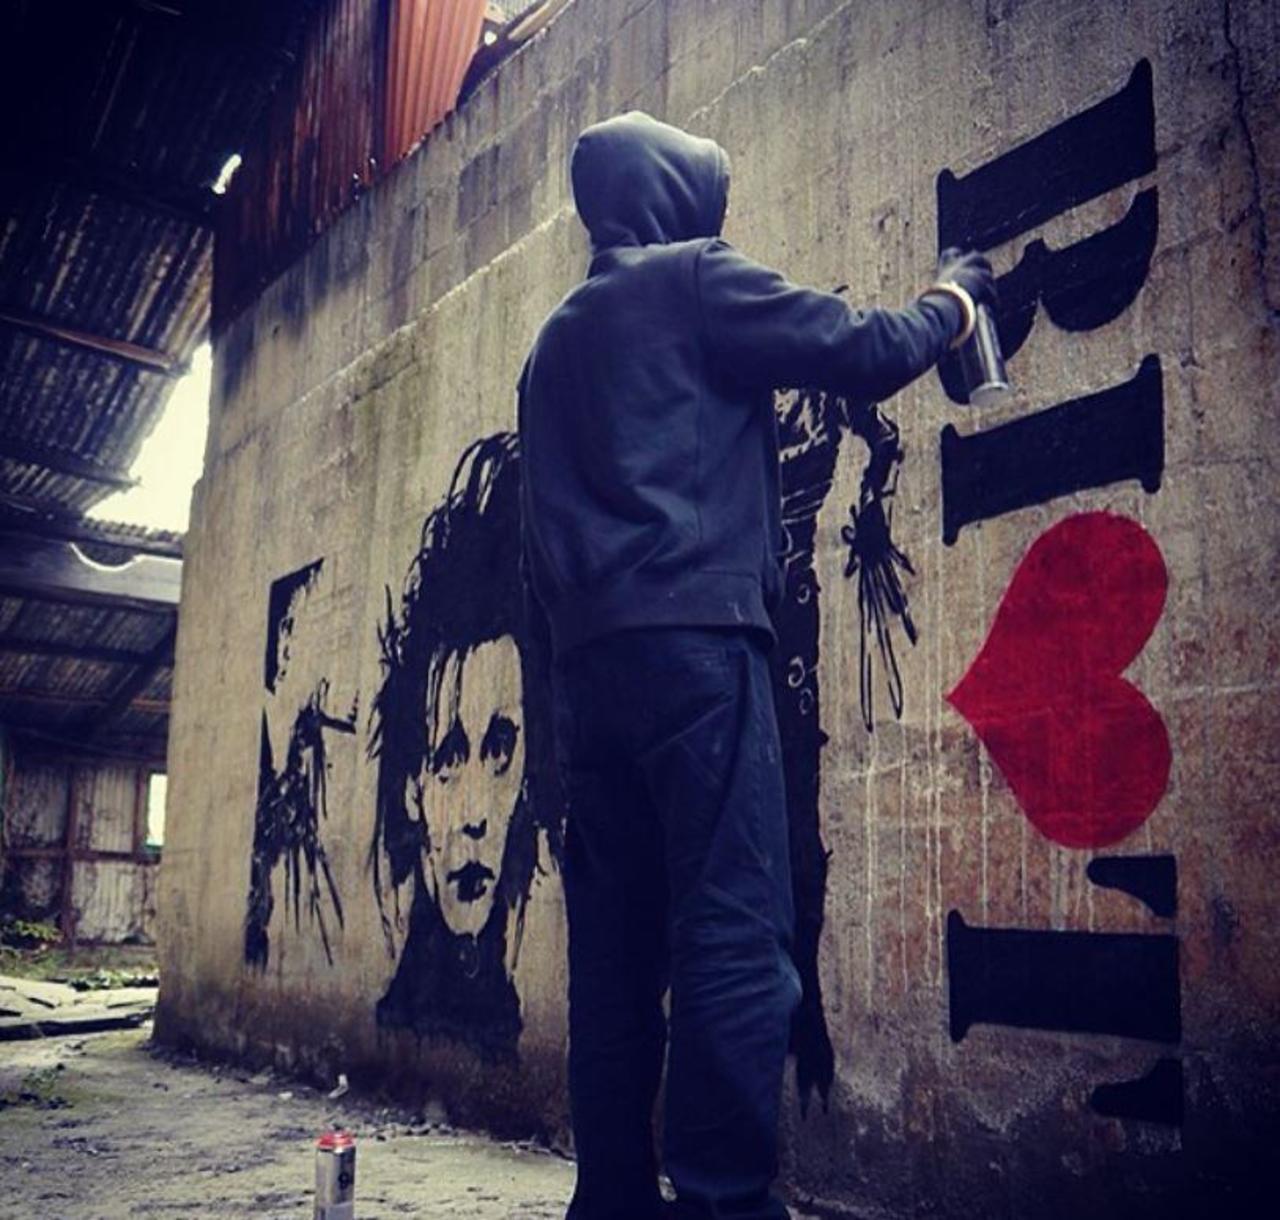 RT @5putnik1: Edward Scissorhands / Riot • #streetart #graffiti #art #funky #dope . : http://t.co/3xtevulawc